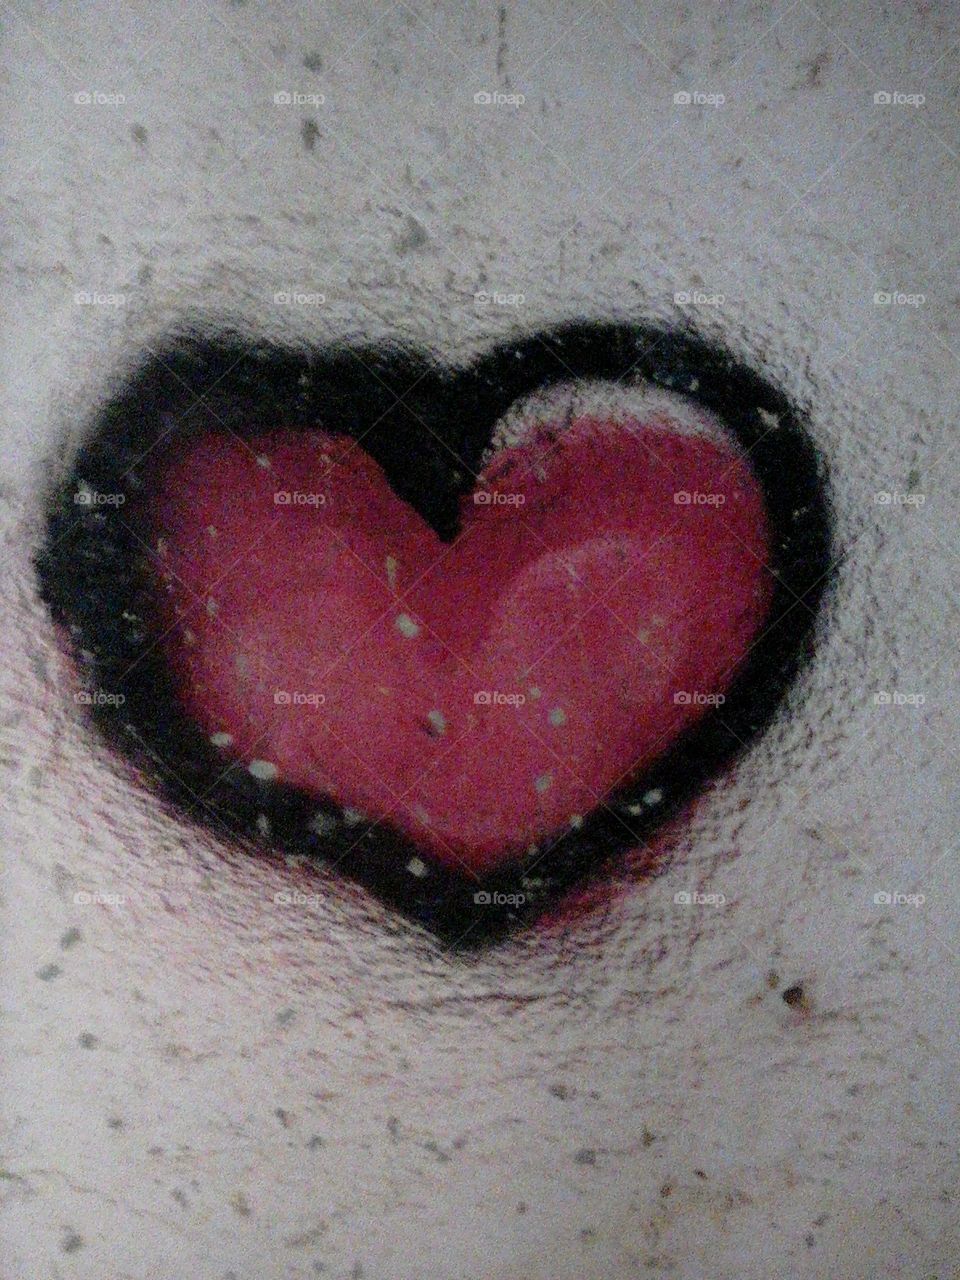 Love graffiti